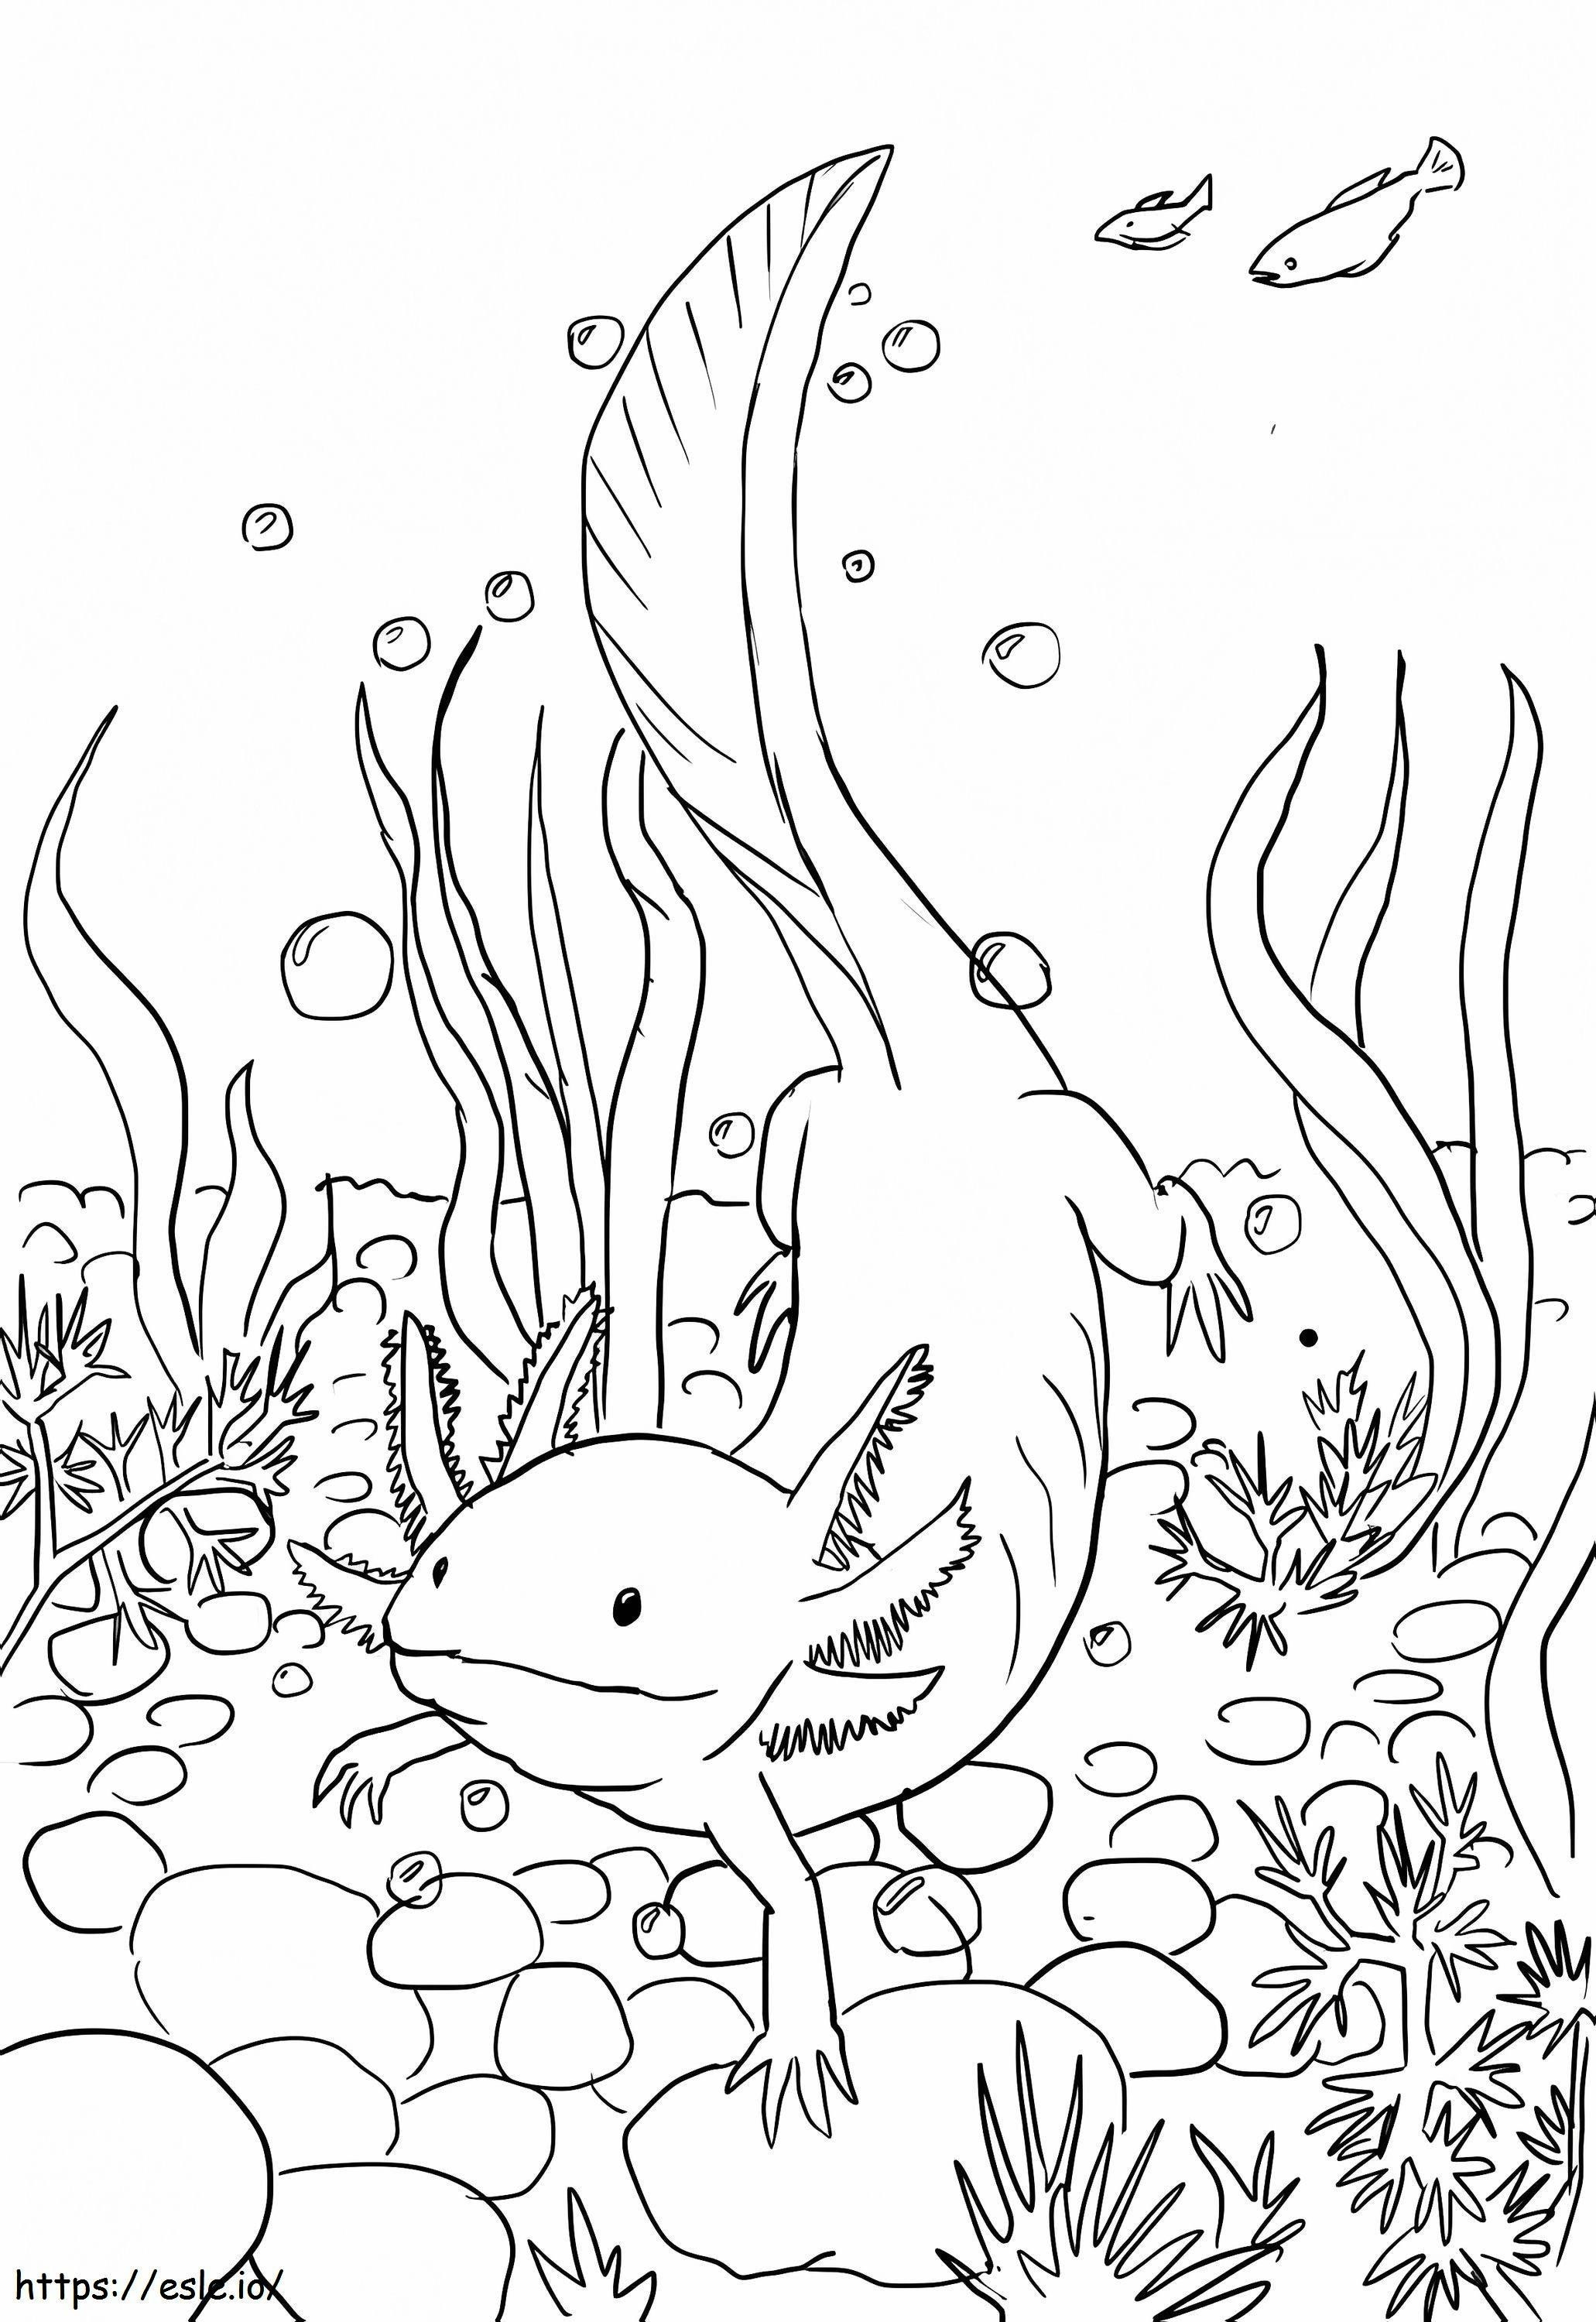 Nuoto dell'Axolotl da colorare